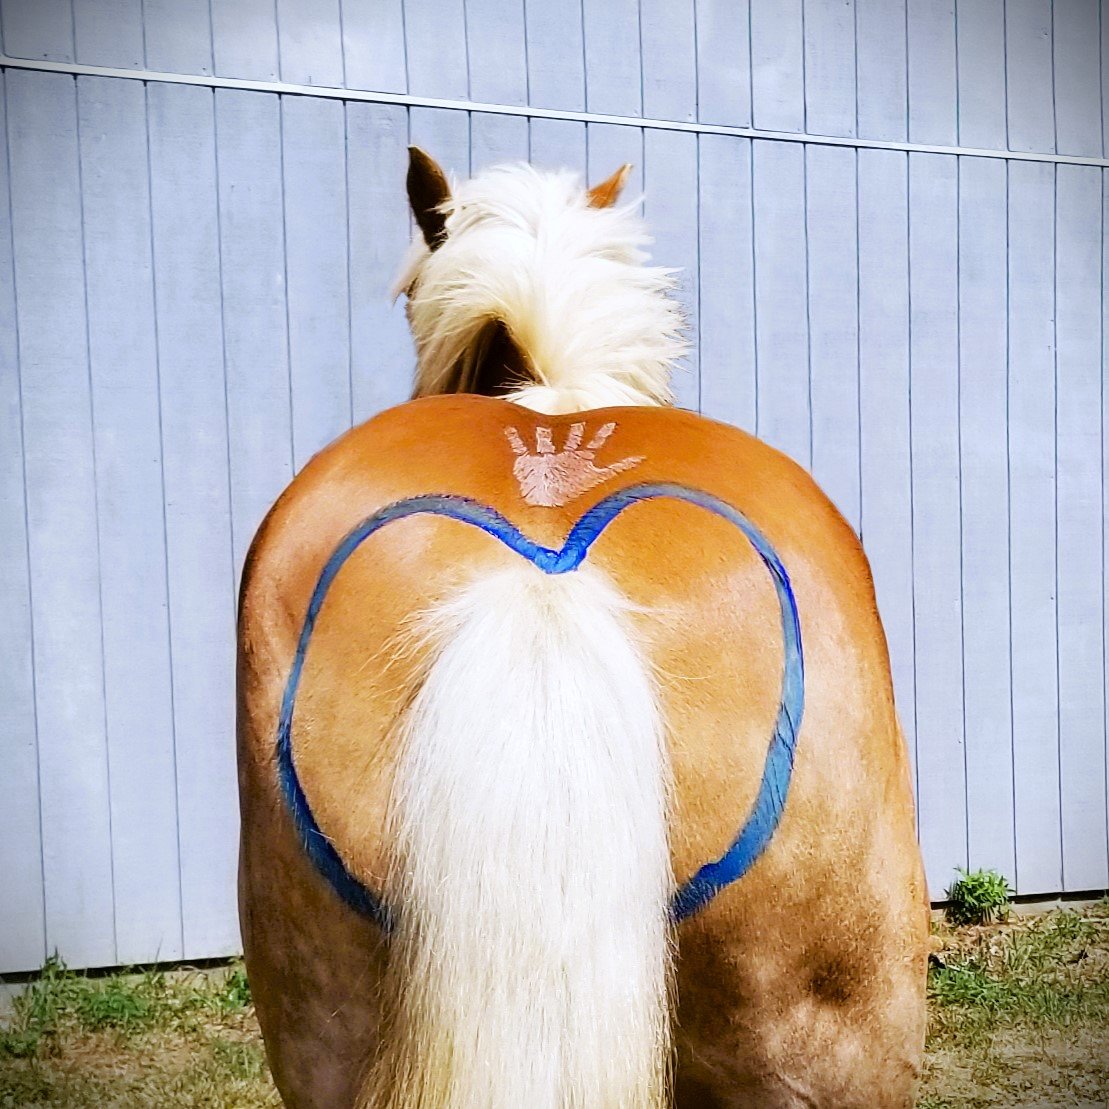 Horse butt - heart&hand-edit-2.jpg